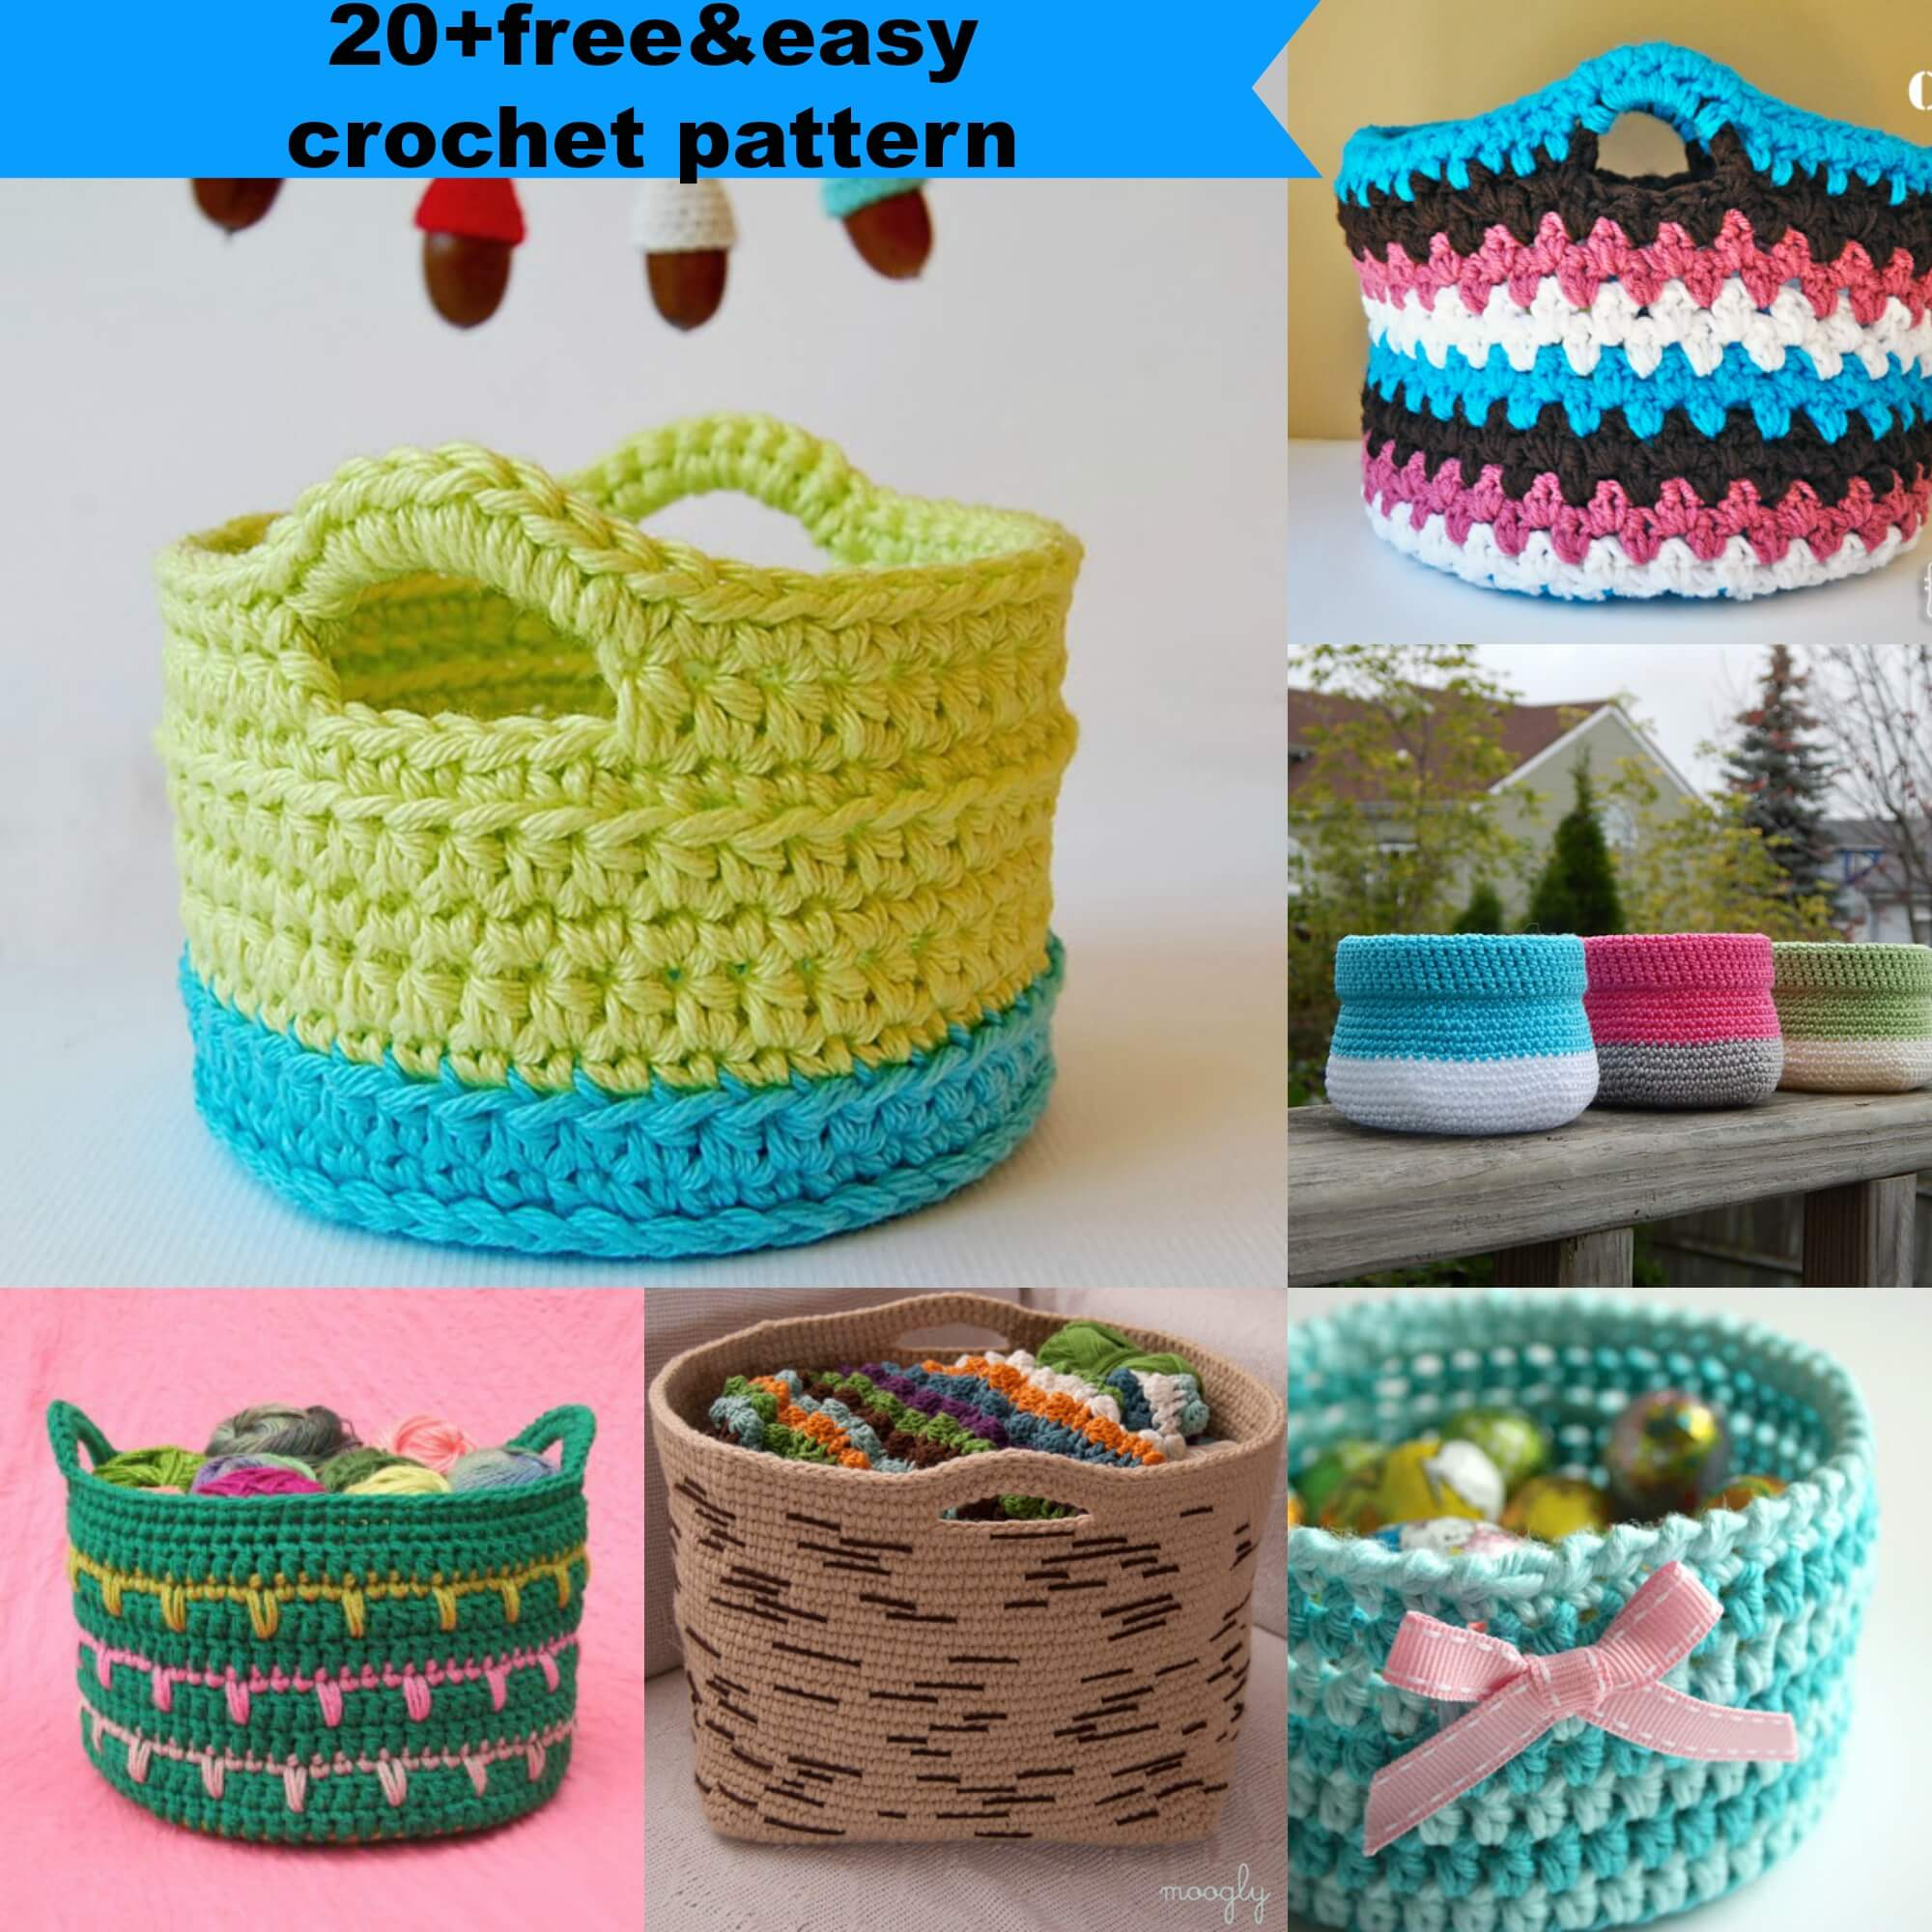 Crochet Fruit Basket Pattern 23 Free Easy Crochet Baskets Patterns